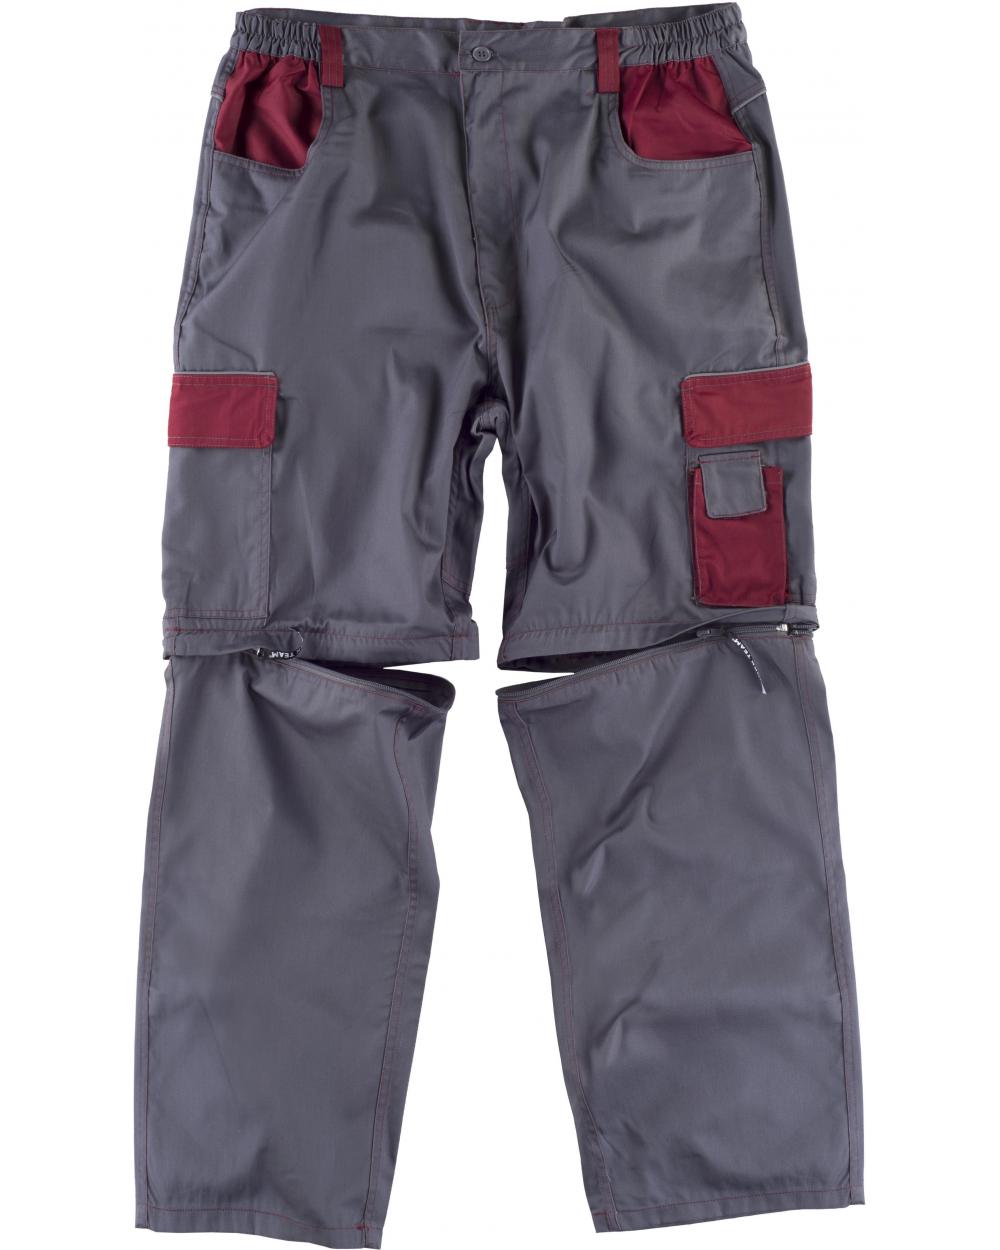 Comprar Pantalon desmontable WF1850 Gris+Granate workteam delante